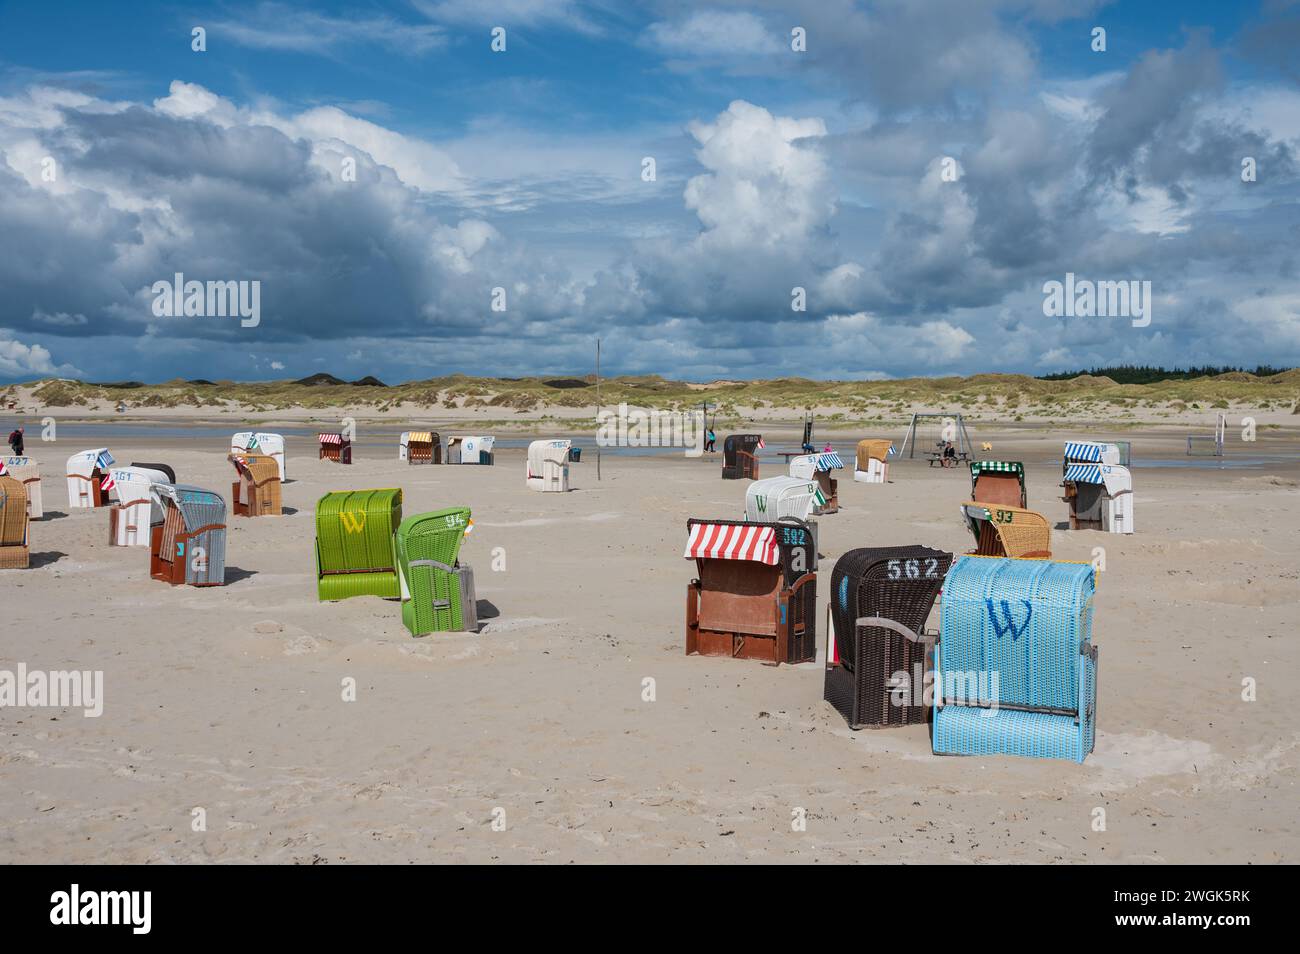 Strandleben am feinen Sandstrand von Norddorf auf der Nordseeinsel Amrum mit dramatischen Wolkenformationen Stockfoto